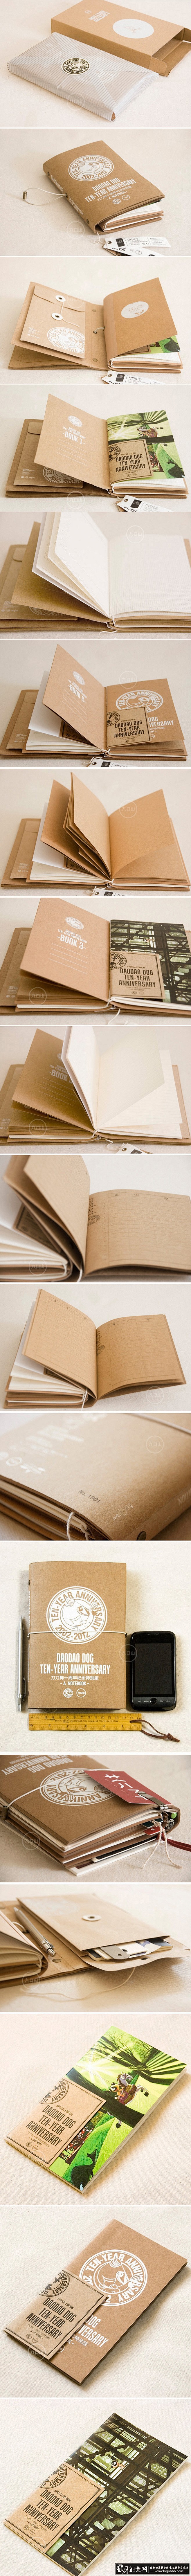 书籍装帧 打码版旅行日记本笔记本装订 创...